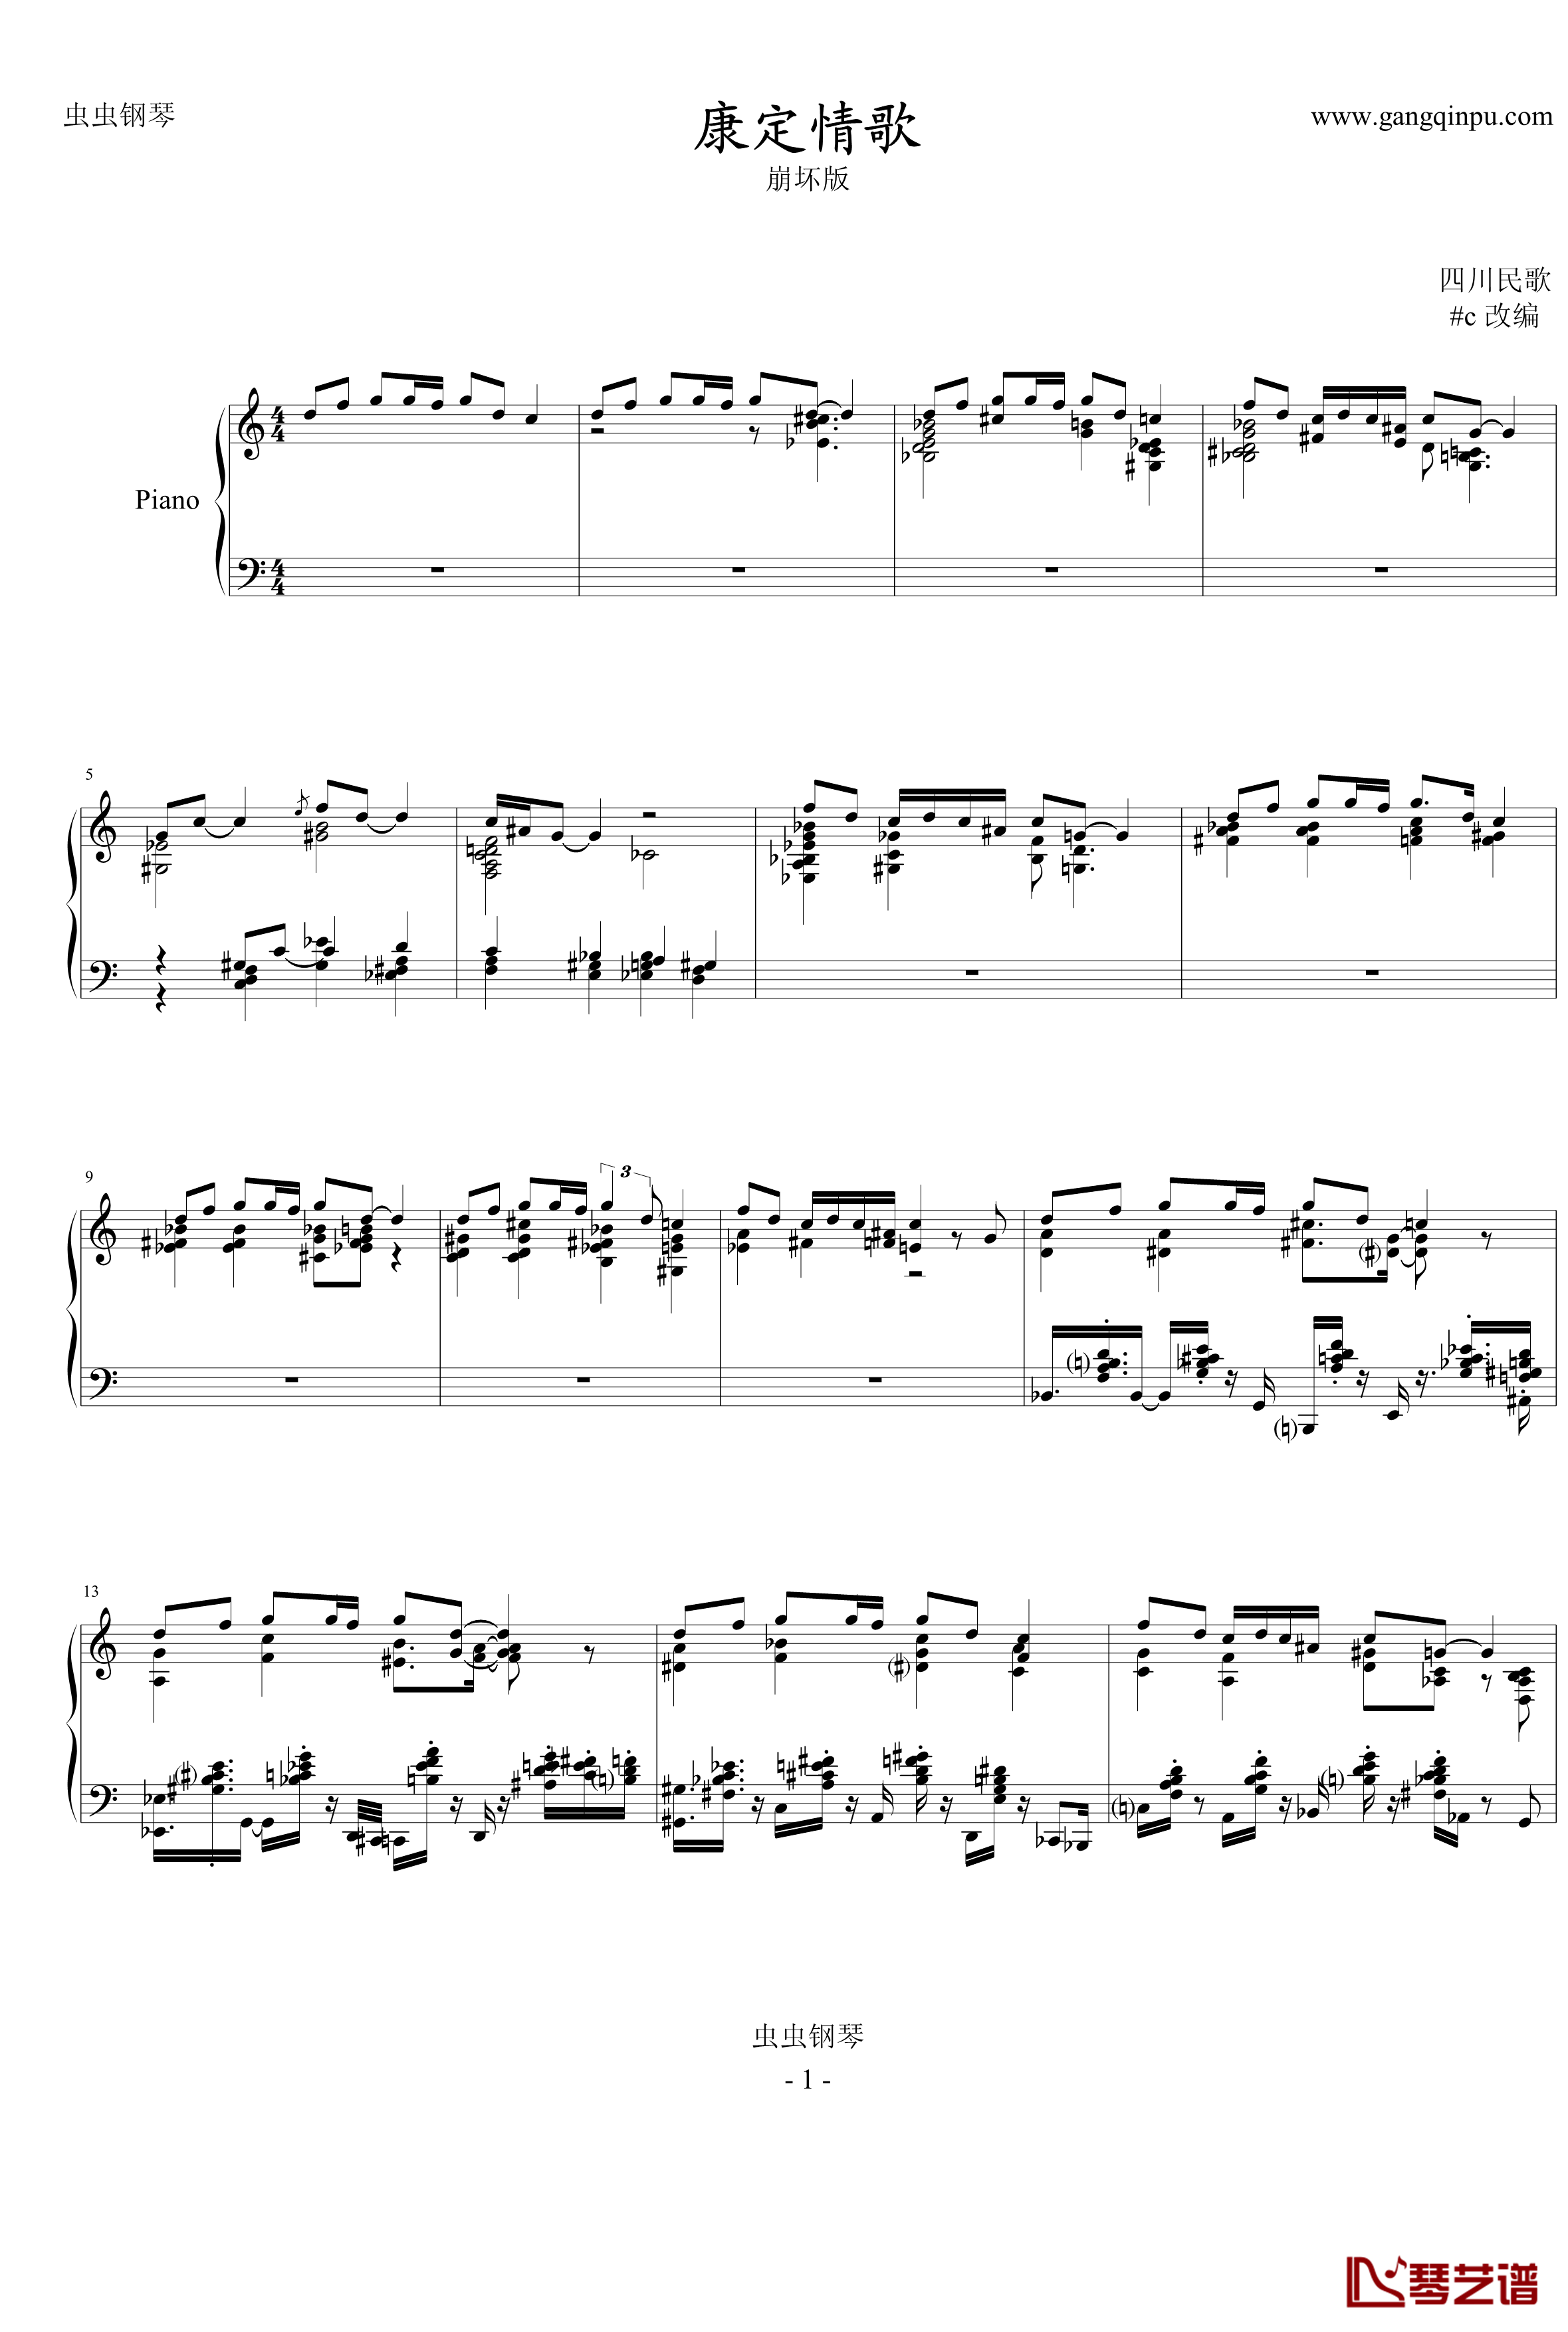 康定情歌钢琴谱-崩坏版中国名曲